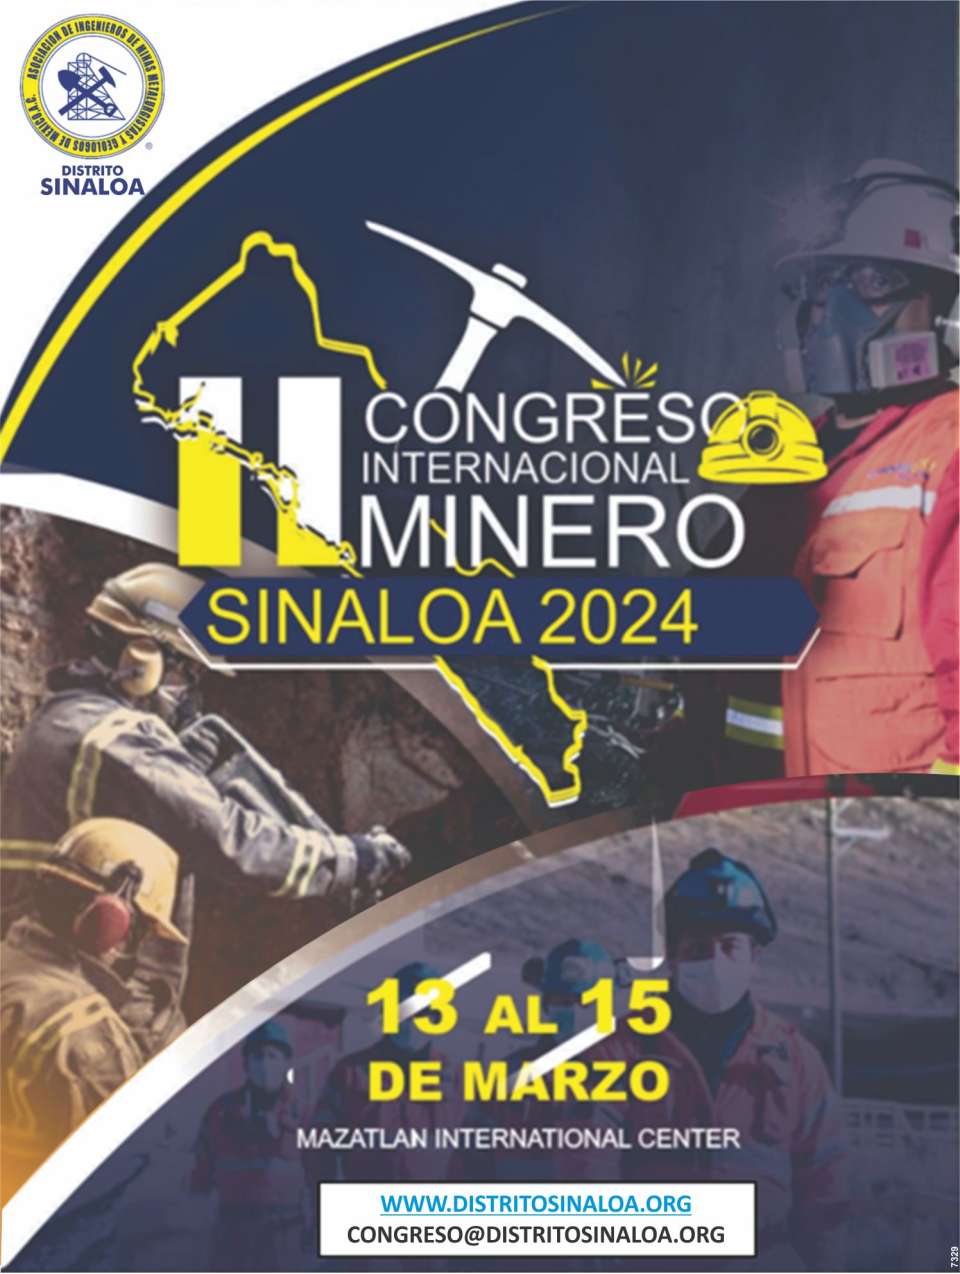 Congreso Internacional Minero en Mazatlan, Sinaloa. 13 al 15 de Marzo 2024 en el Centro de Convenciones